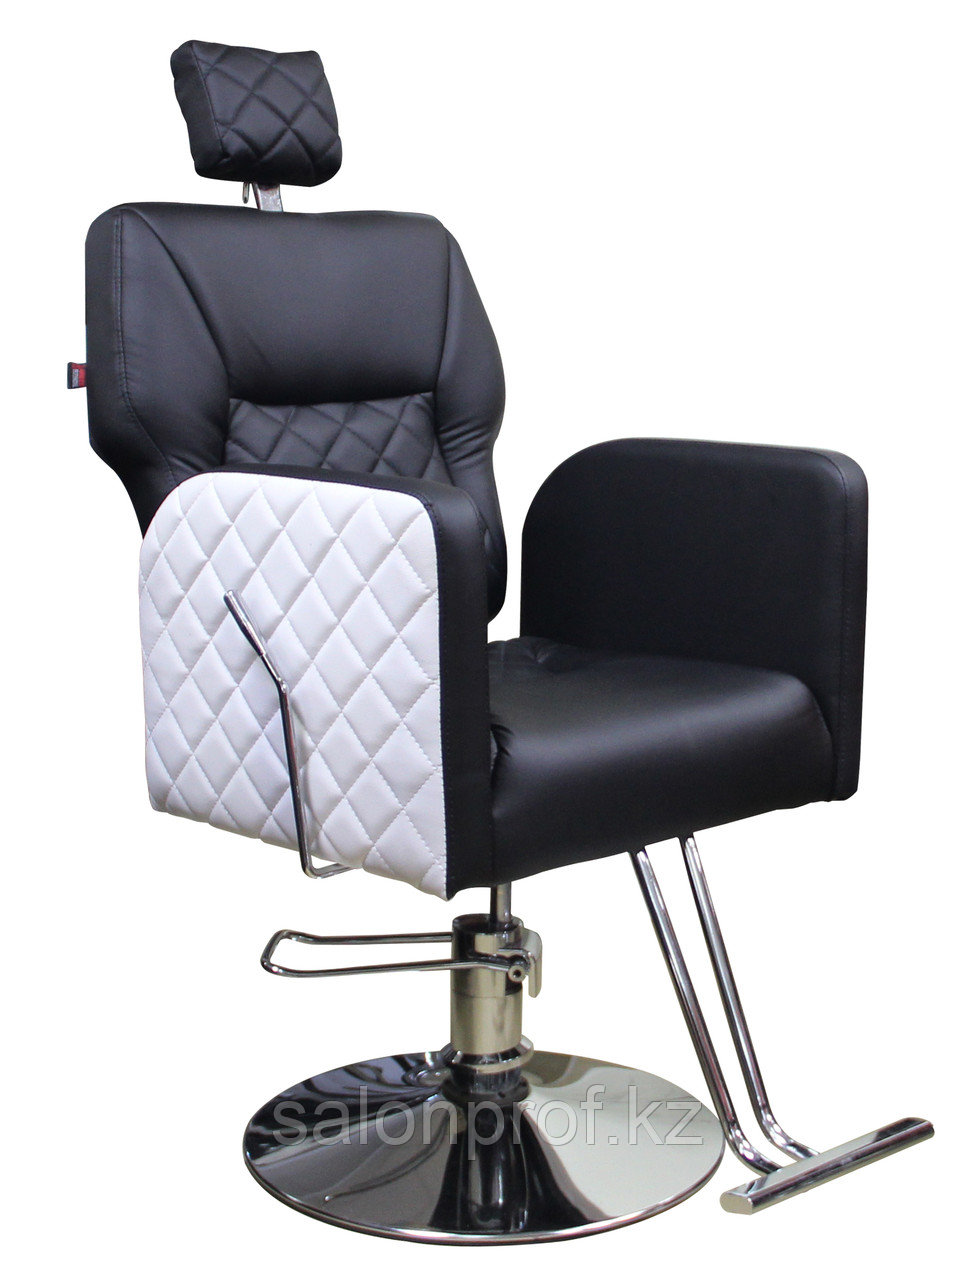 AS-6677 Кресло парикмахерское с откидной спинкой (черно-белое)